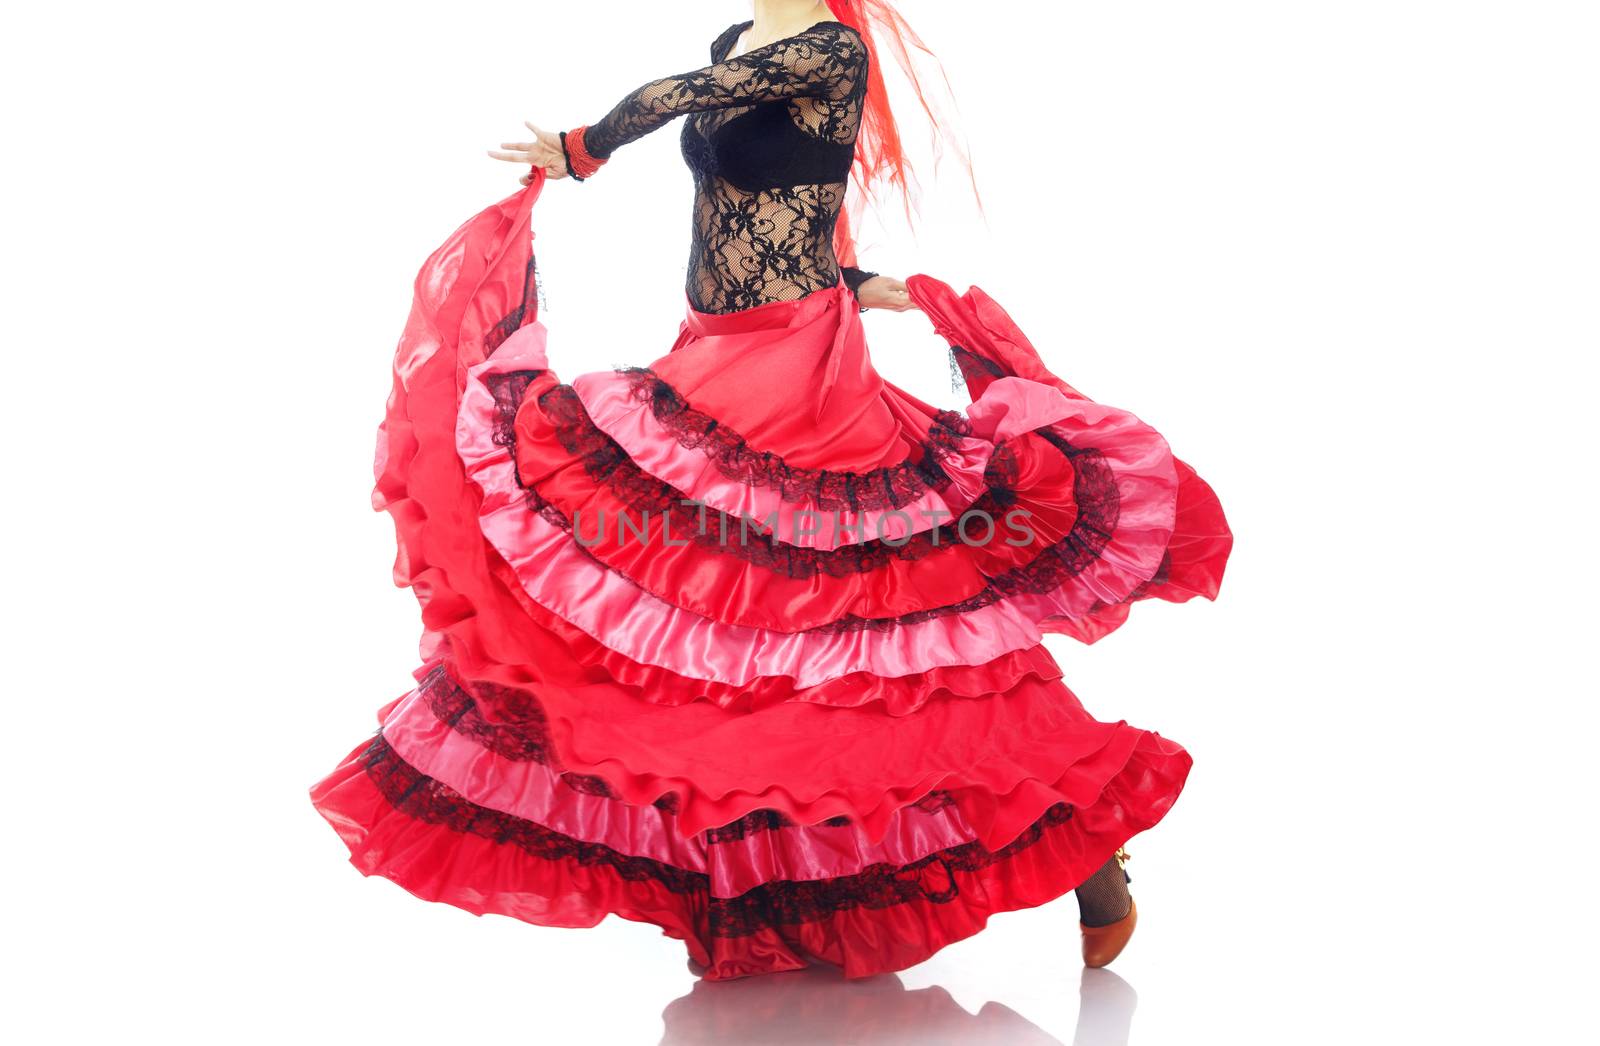 Woman in the red petticoat dancing flamenco